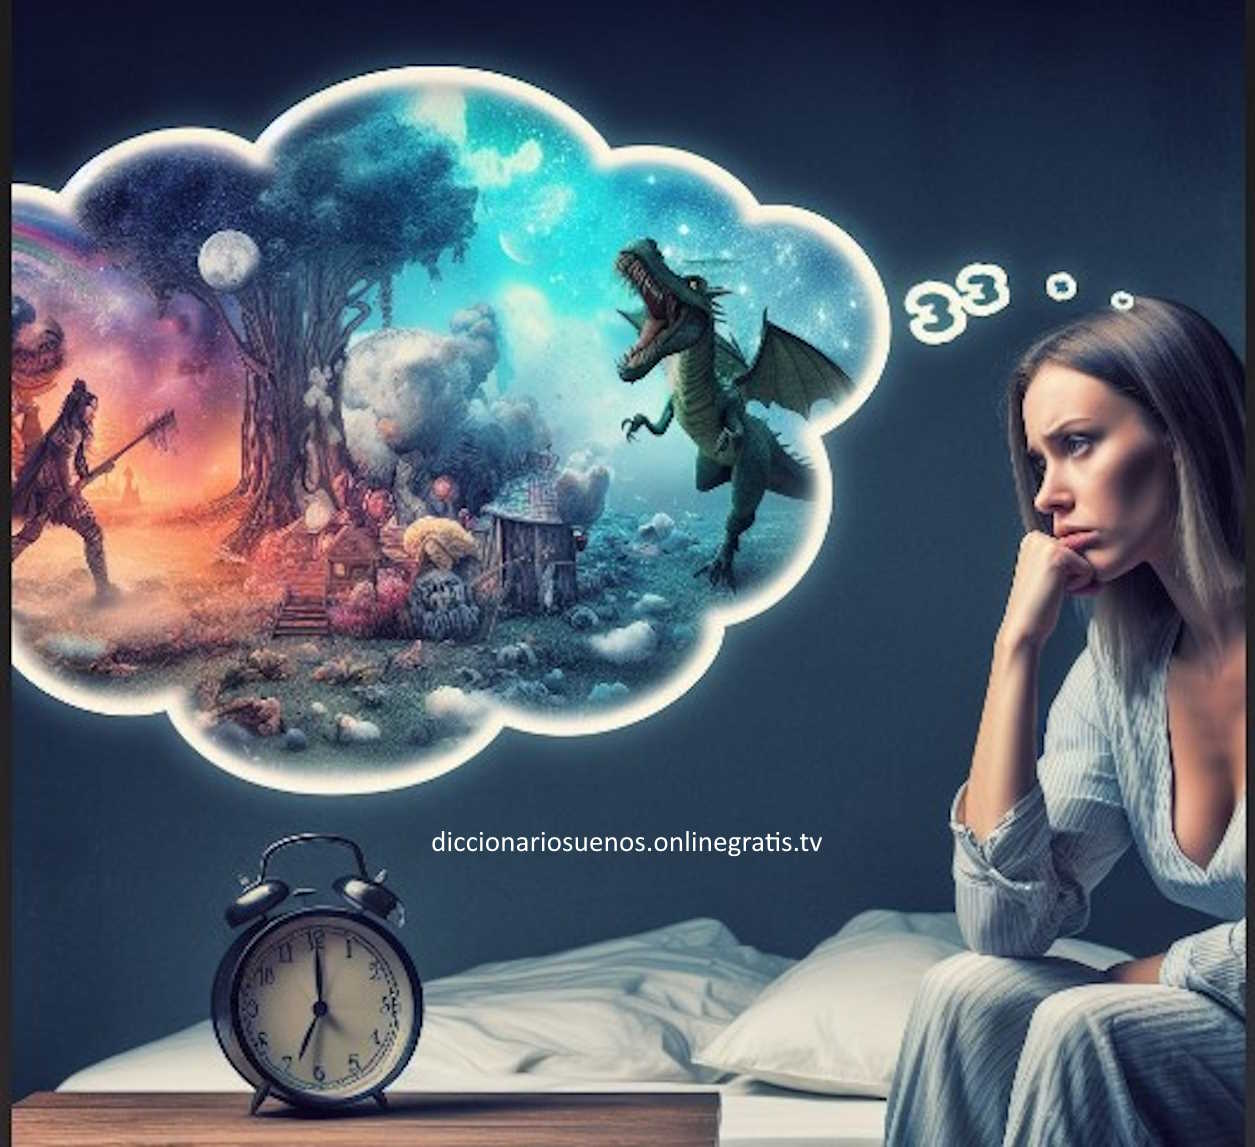 Una portada de un diccionario de interpretación de sueños con el título '¿Qué significan tus sueños?' y varias imágenes de elementos comunes en los sueños, como una casa, una llave, una serpiente, una escalera y una luna.